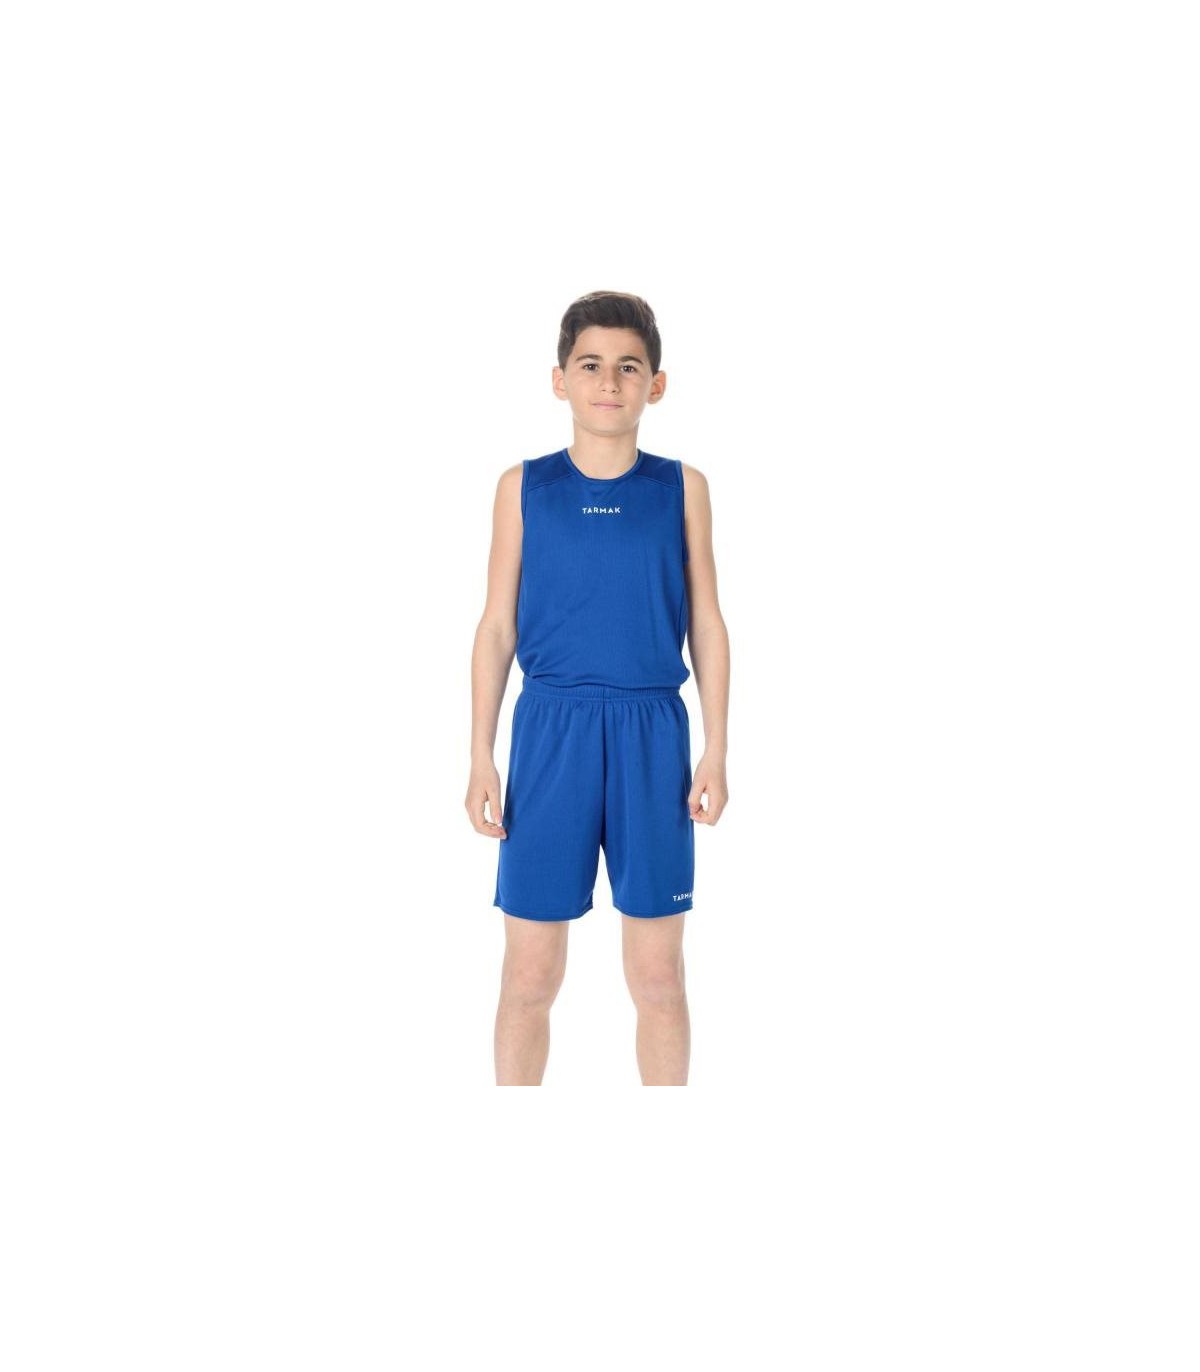 لباس بسکتبال / خرید لباس بسکتبال کودکانه